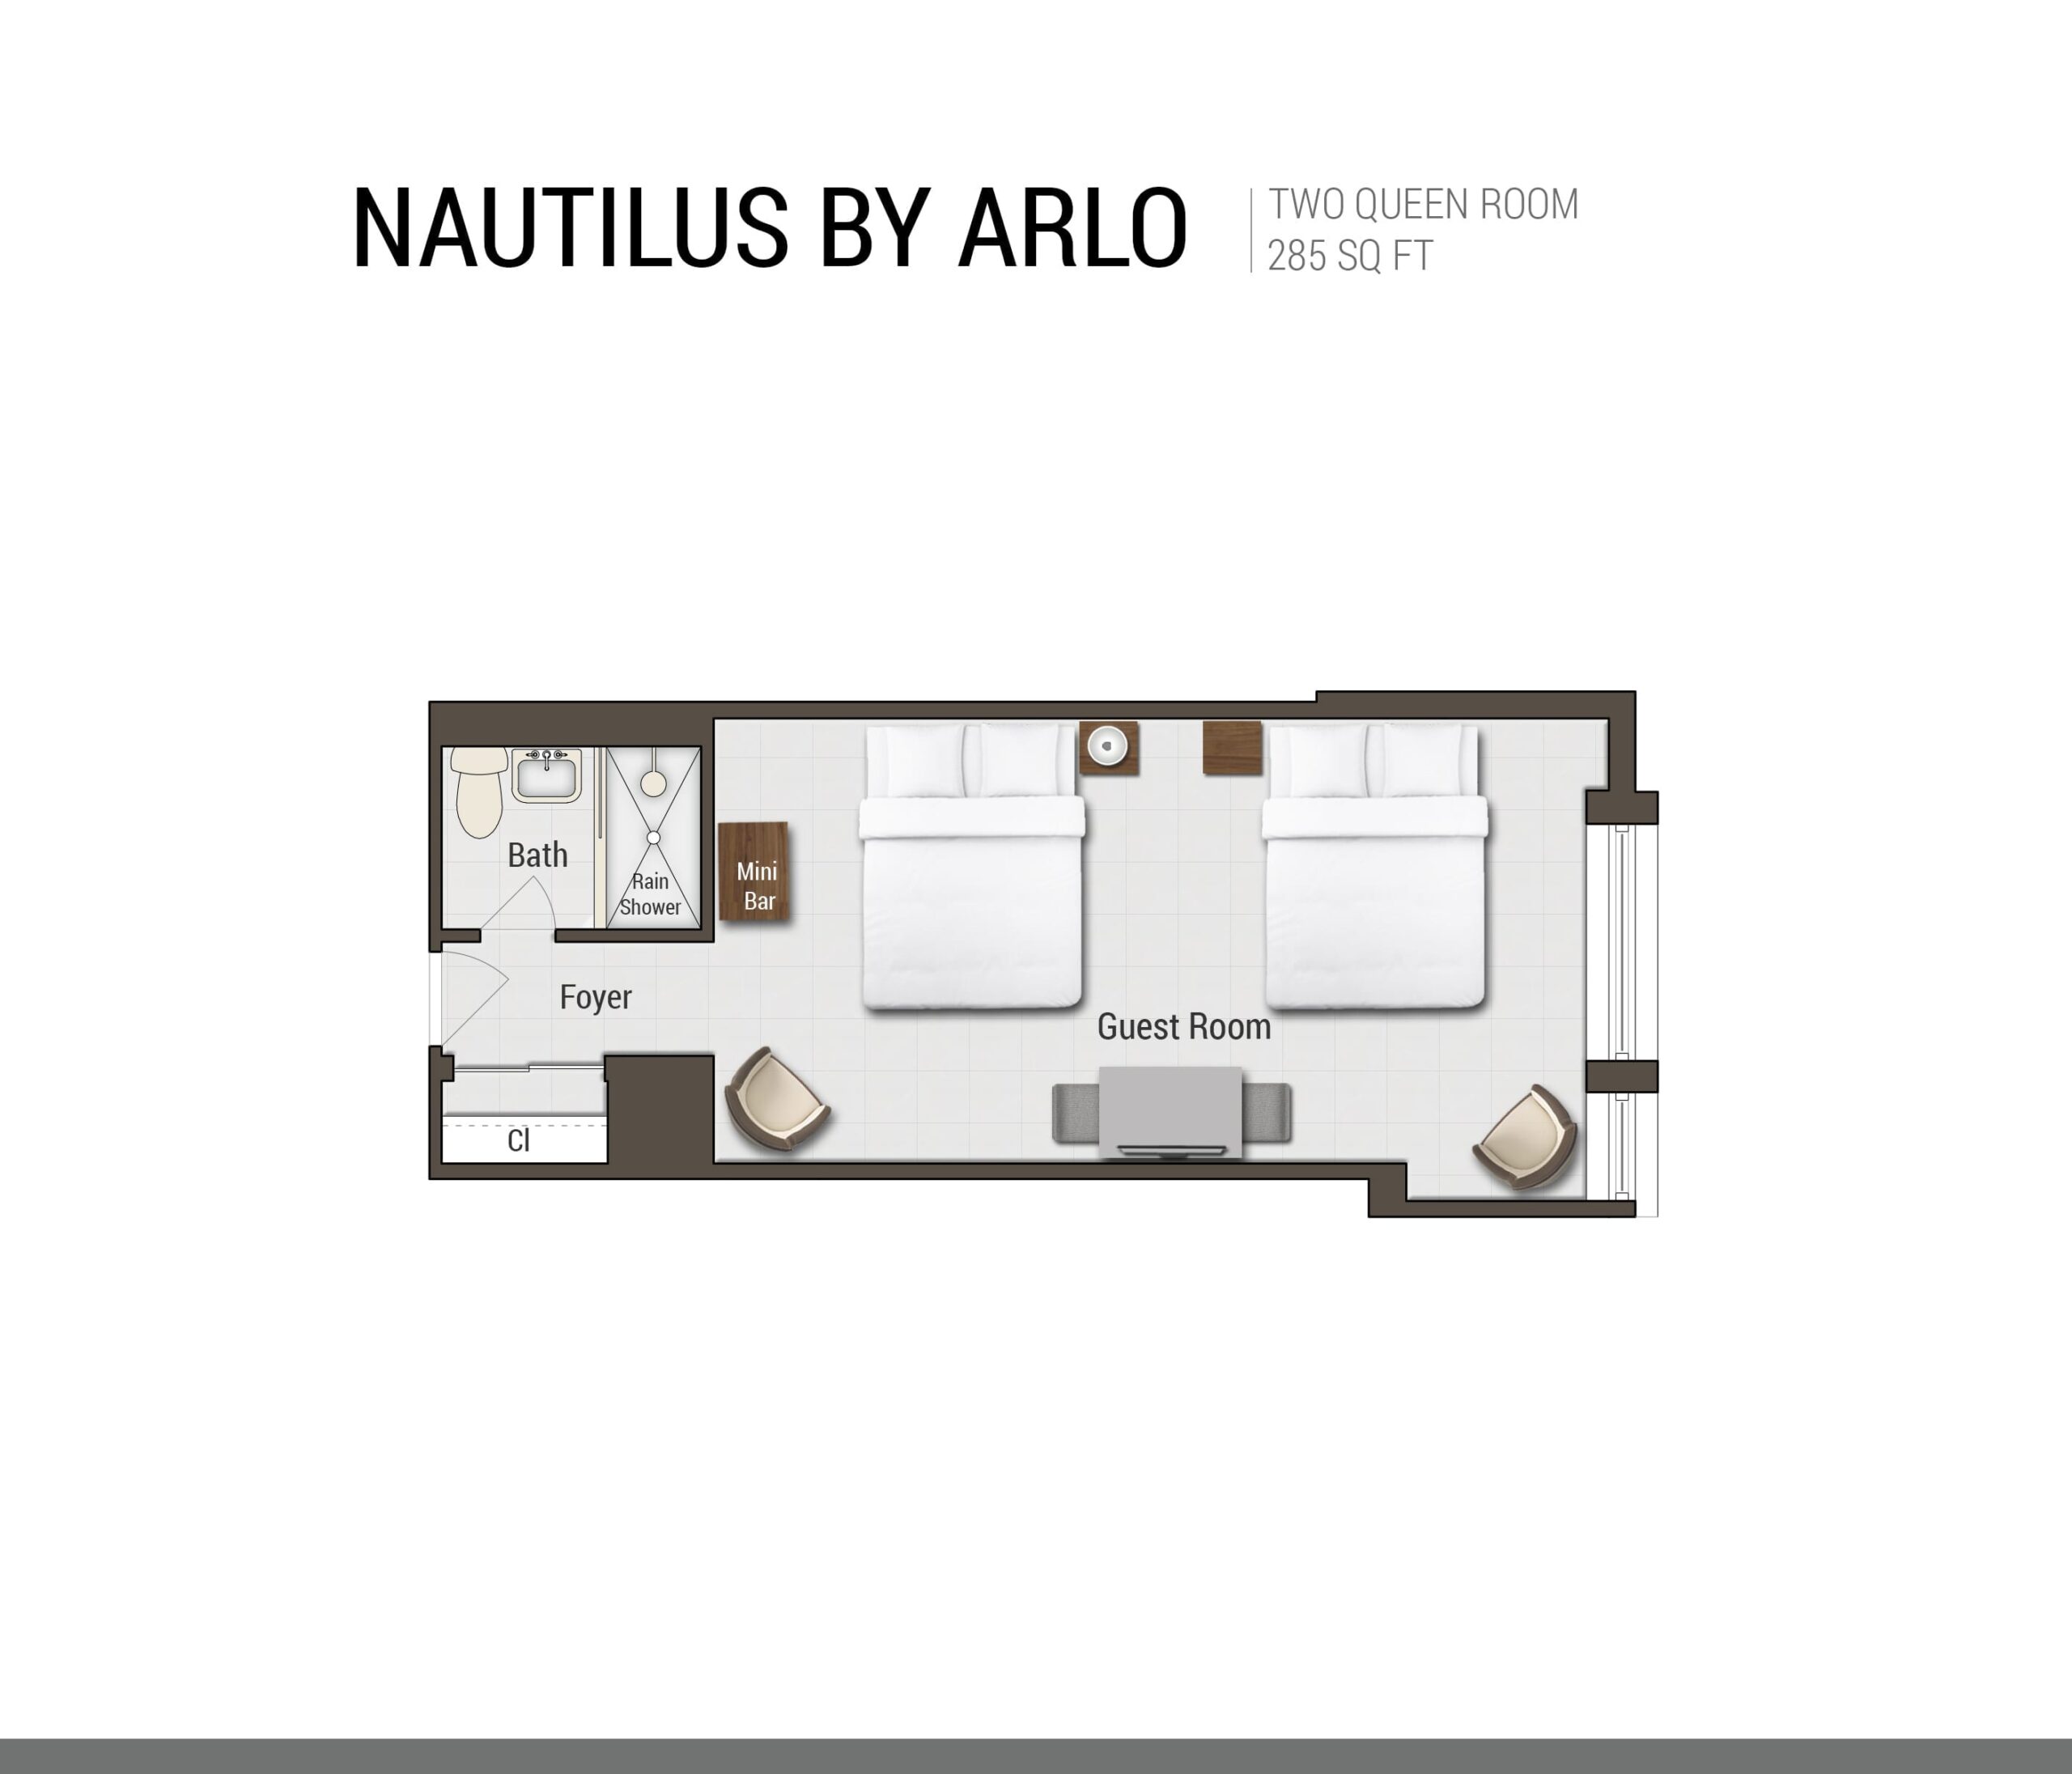 Nautilus by Arlo Two Queen Studio Suite hotel room floorplan